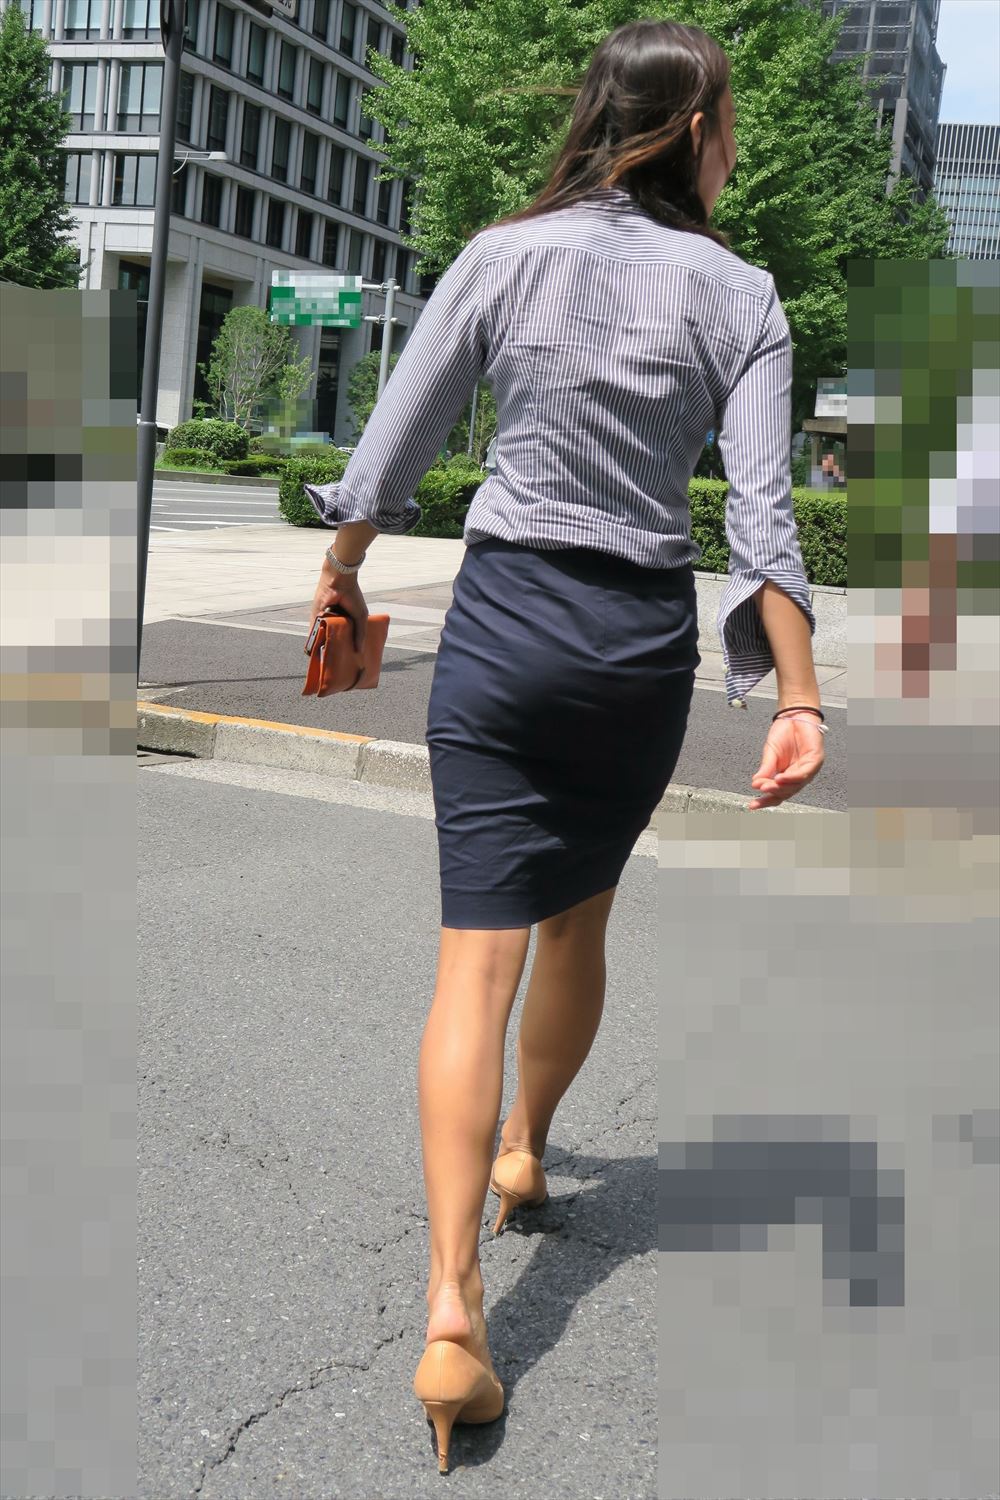 OLさんや就活女子のタイトスカートお尻を街撮りした素人エロ画像-181